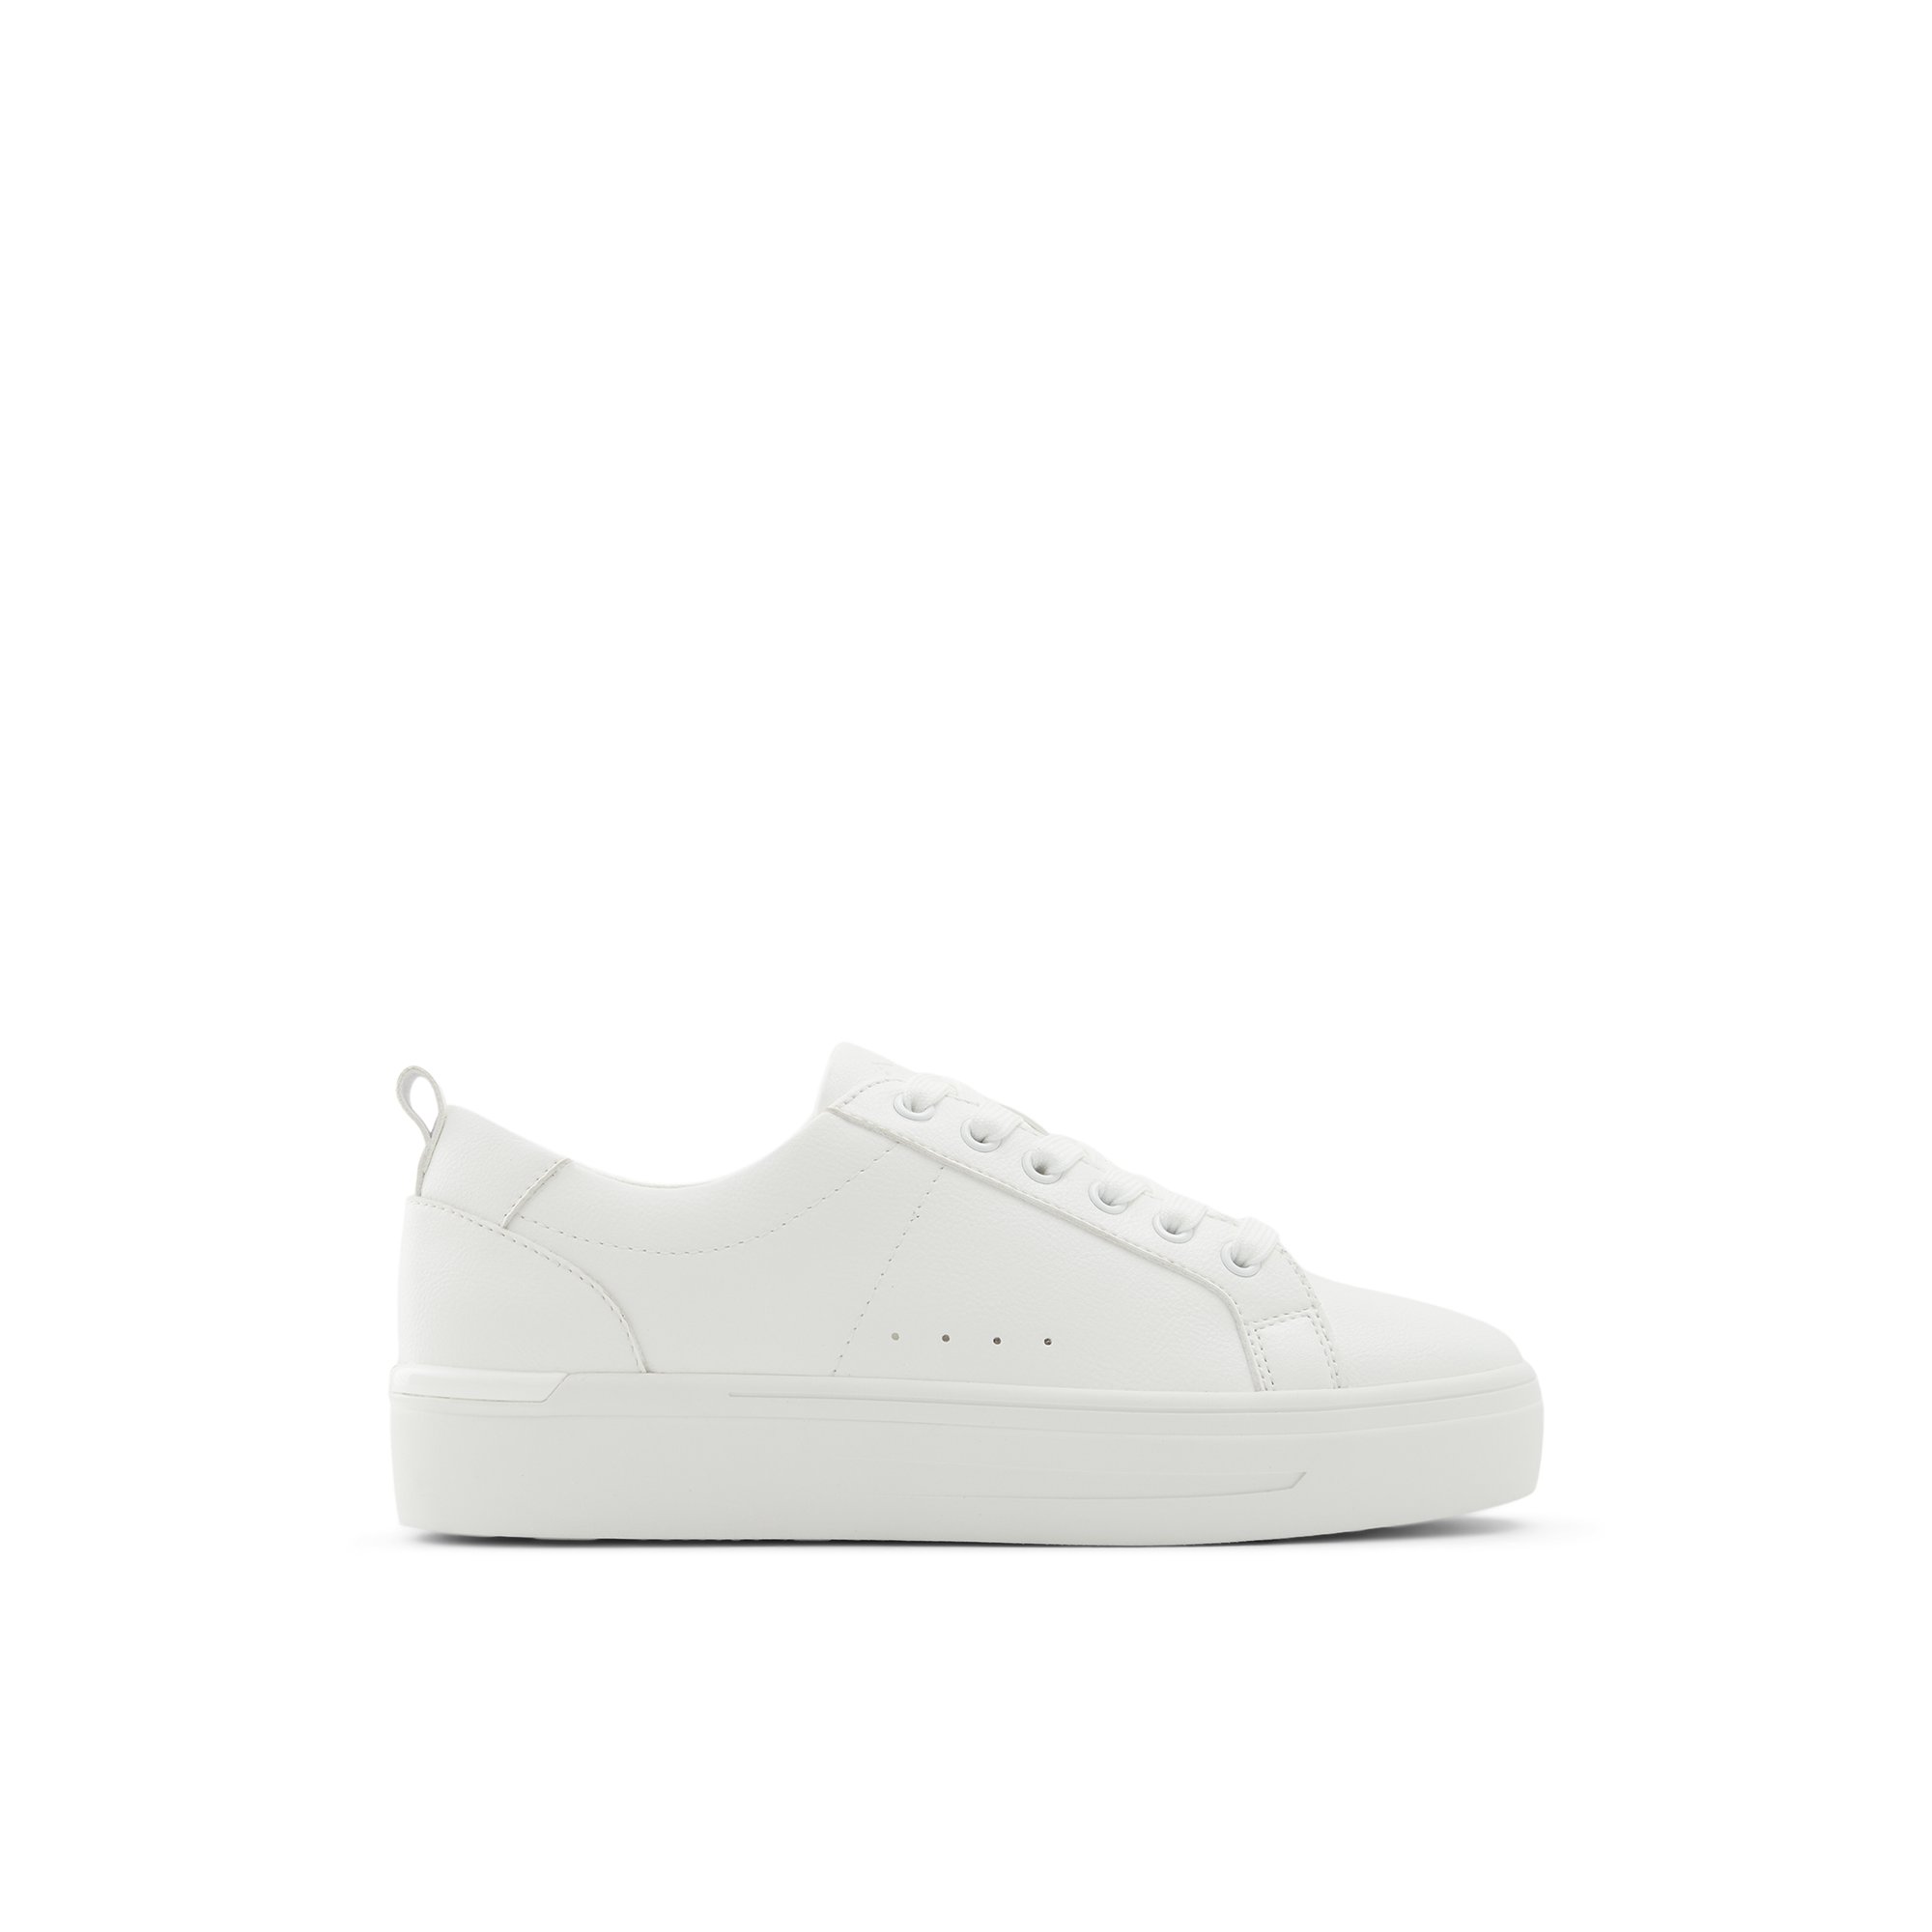 ALDO Meadow - Women's Sneakers Low Top - White